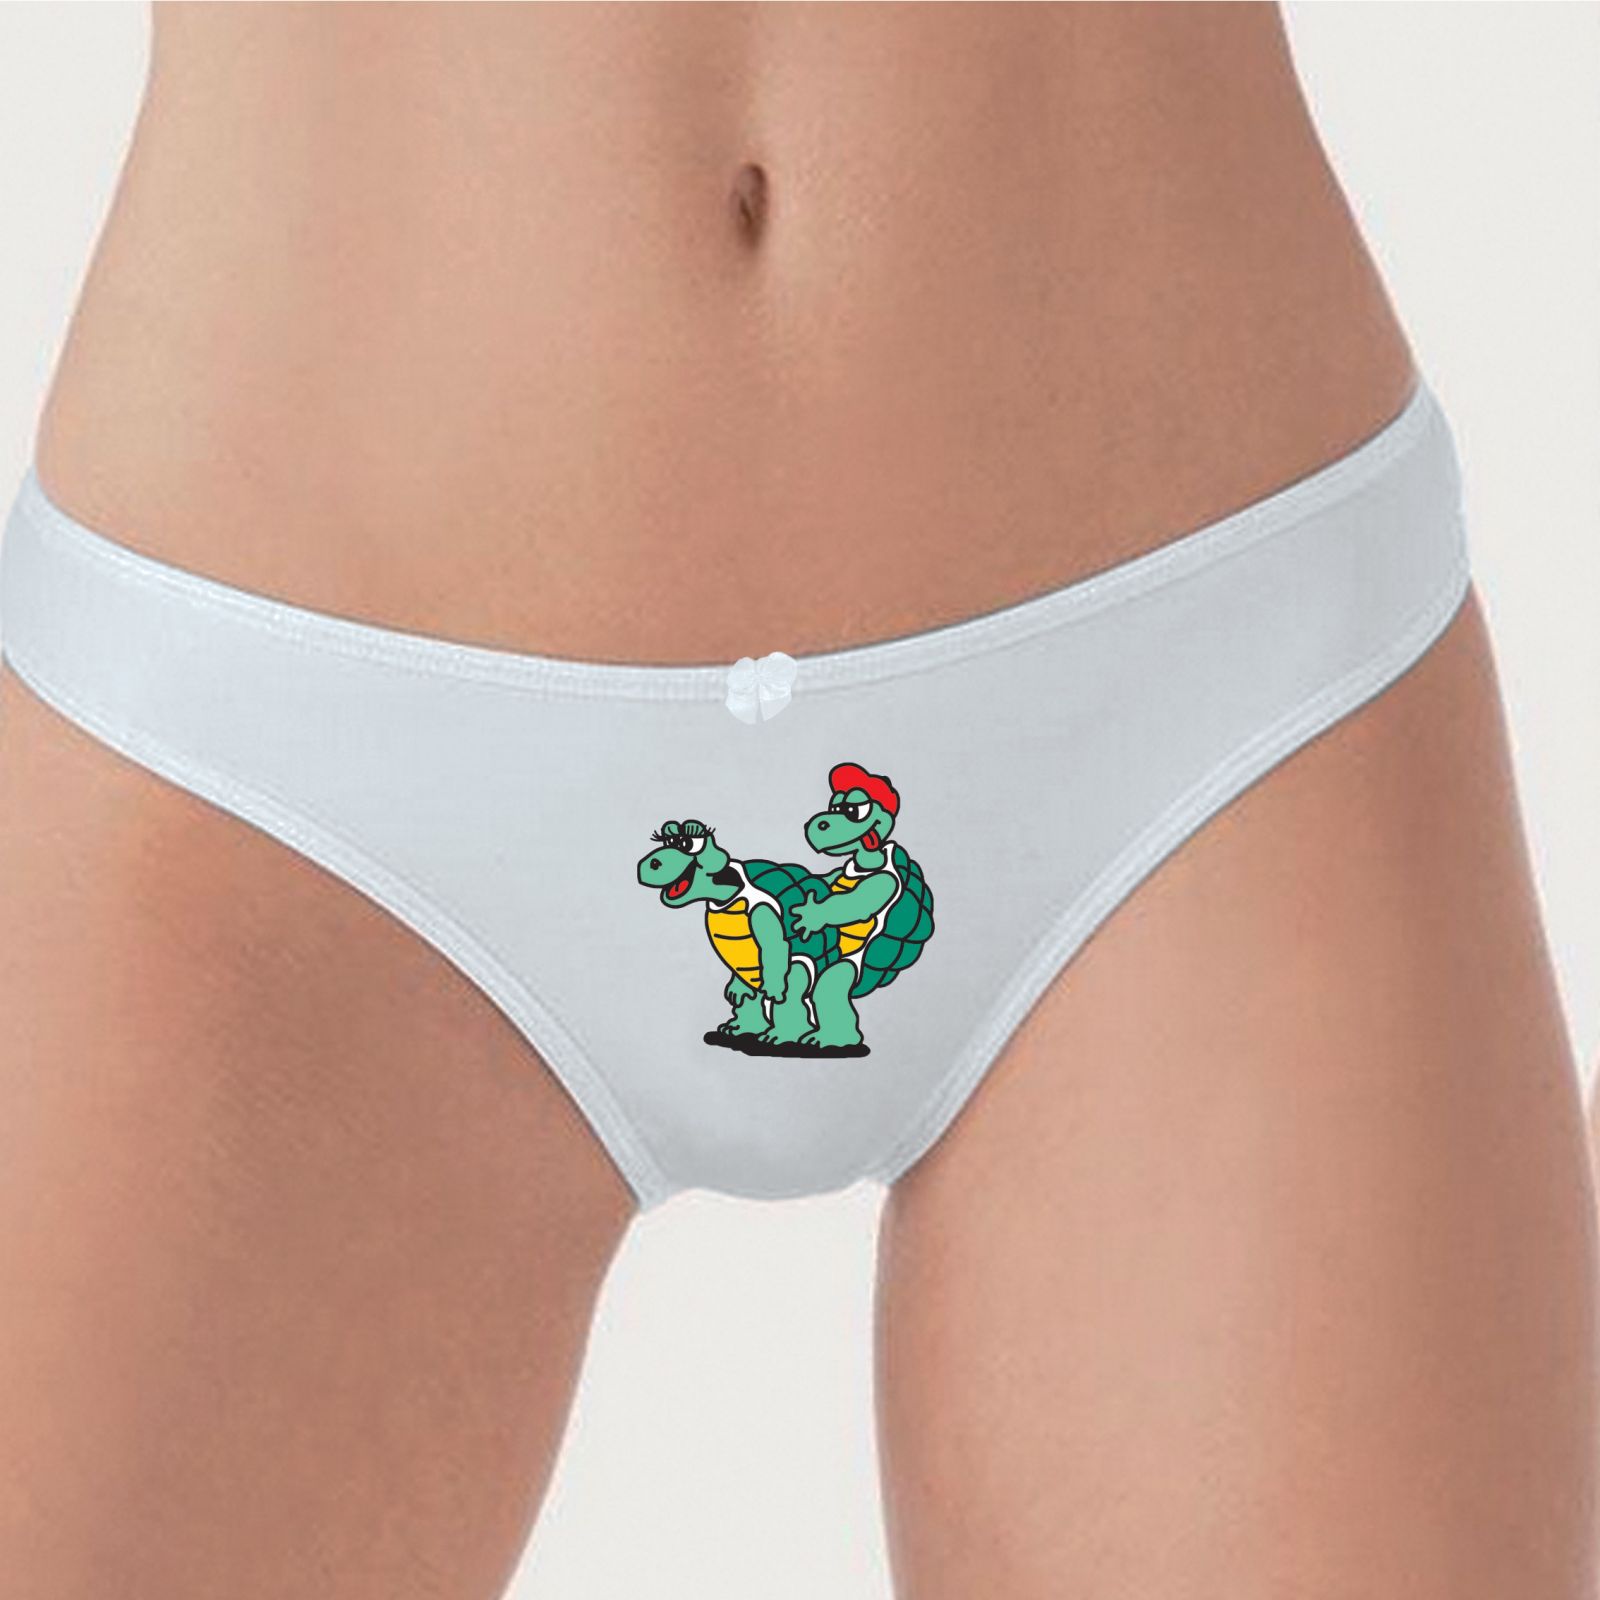 Želvy - Vtipné kalhotky DIVJA